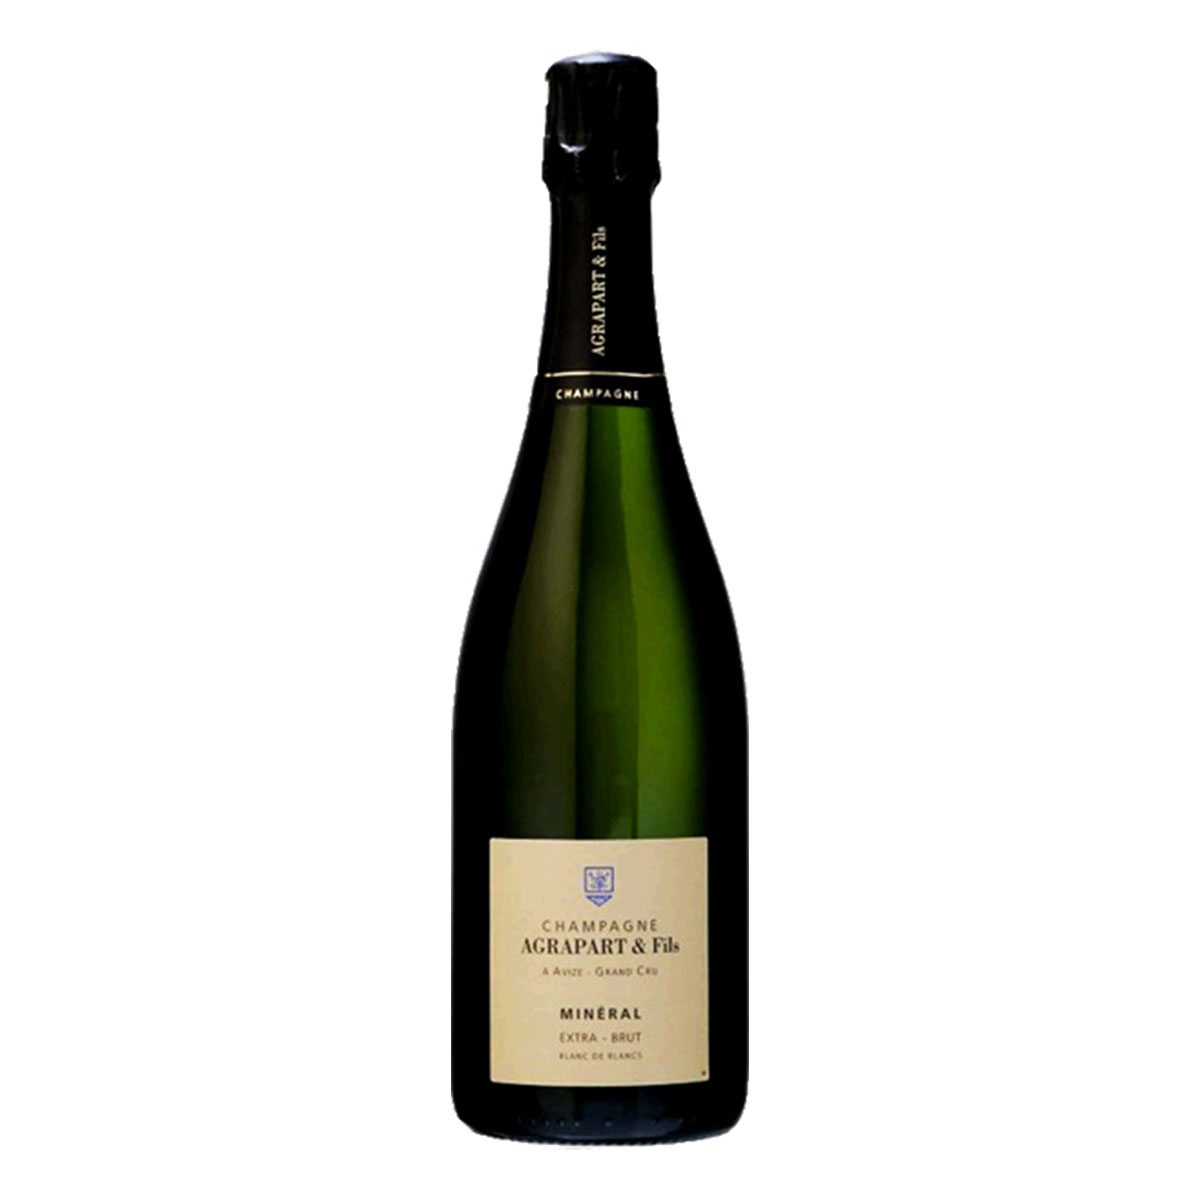 【送料無料】ワイン シャンパーニュ《アグラパール・エ・フィス ブラン・ド・ブラン・ミネラル・エキストラ・ブリュット・グラン・クリュ 2012年》フランス シャンパン 白泡 スパークリング ギフト お祝い おすすめ パーティー 定番 フィラディス